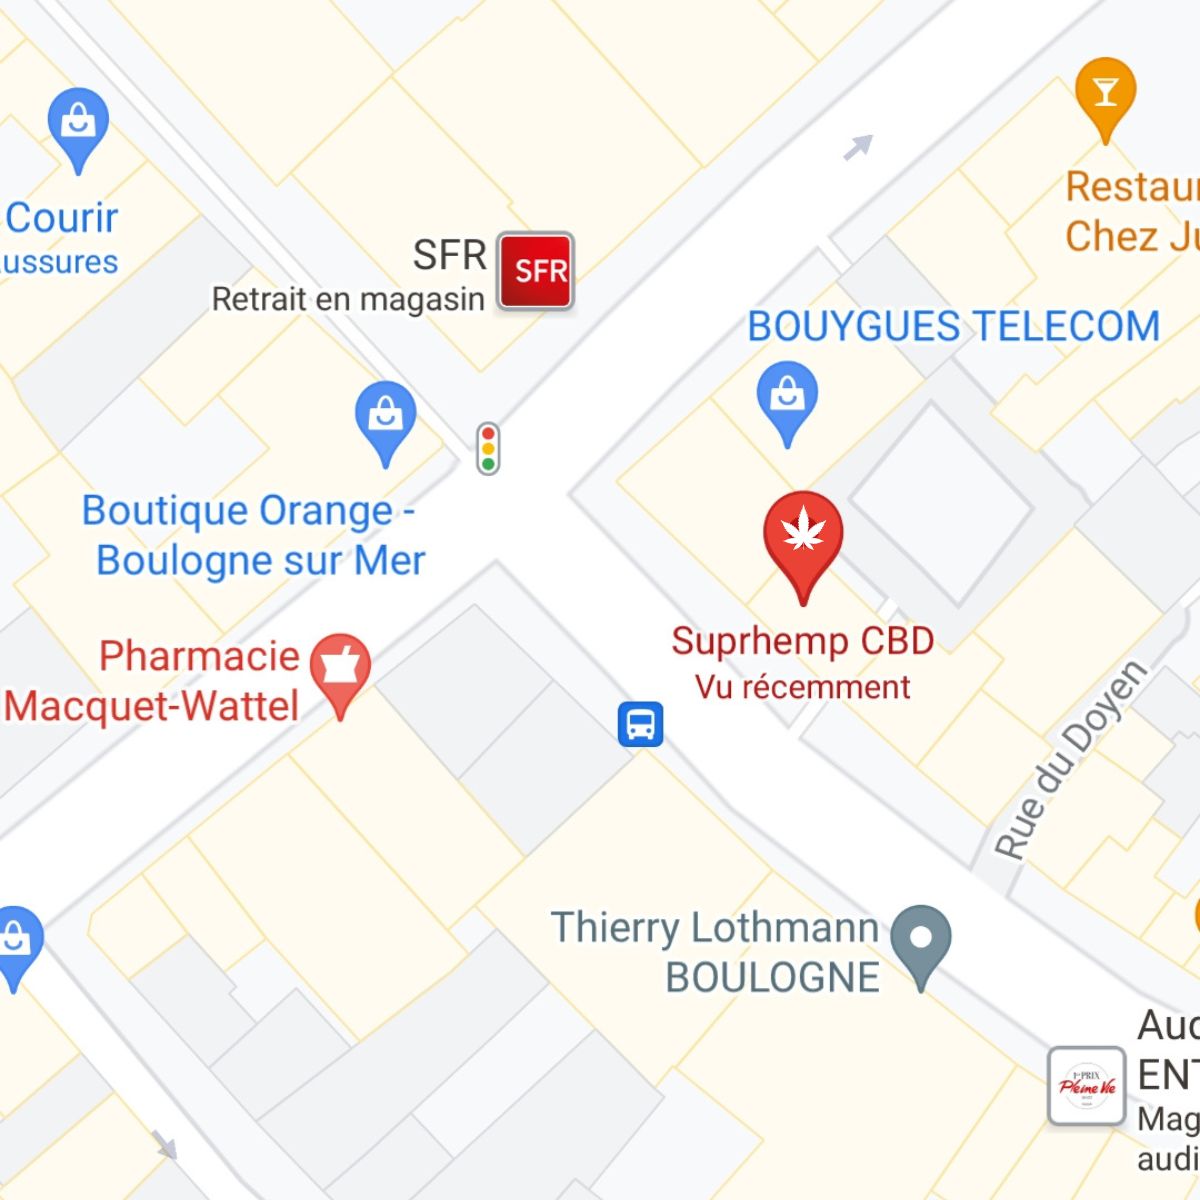 Emplacement de la boutique physique suprhemp, au 5 rue nationale a Boulogne sur Mer